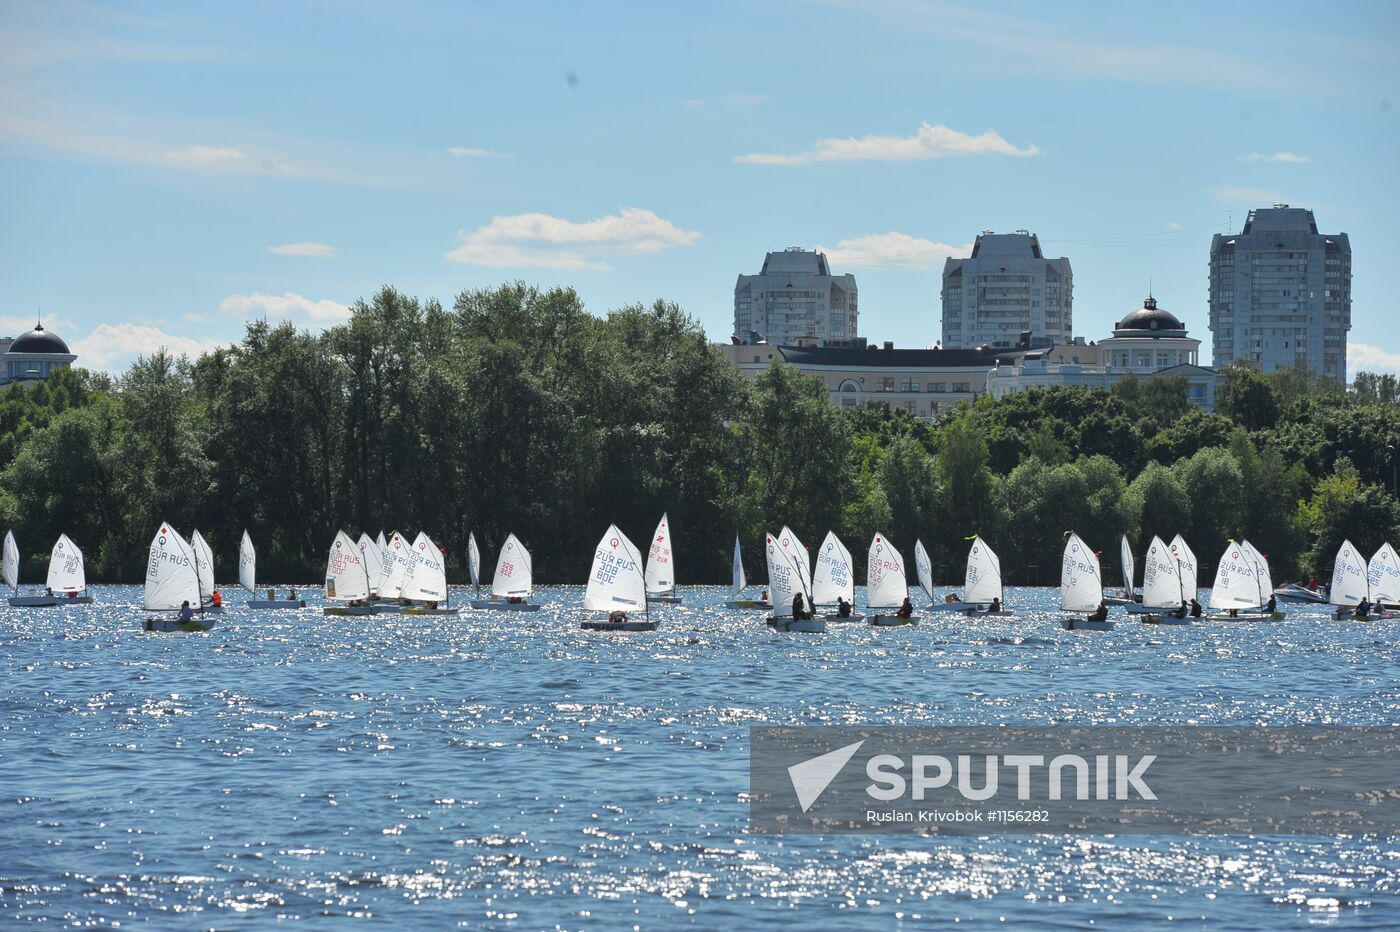 Sailing in waters of Khimki reservoir